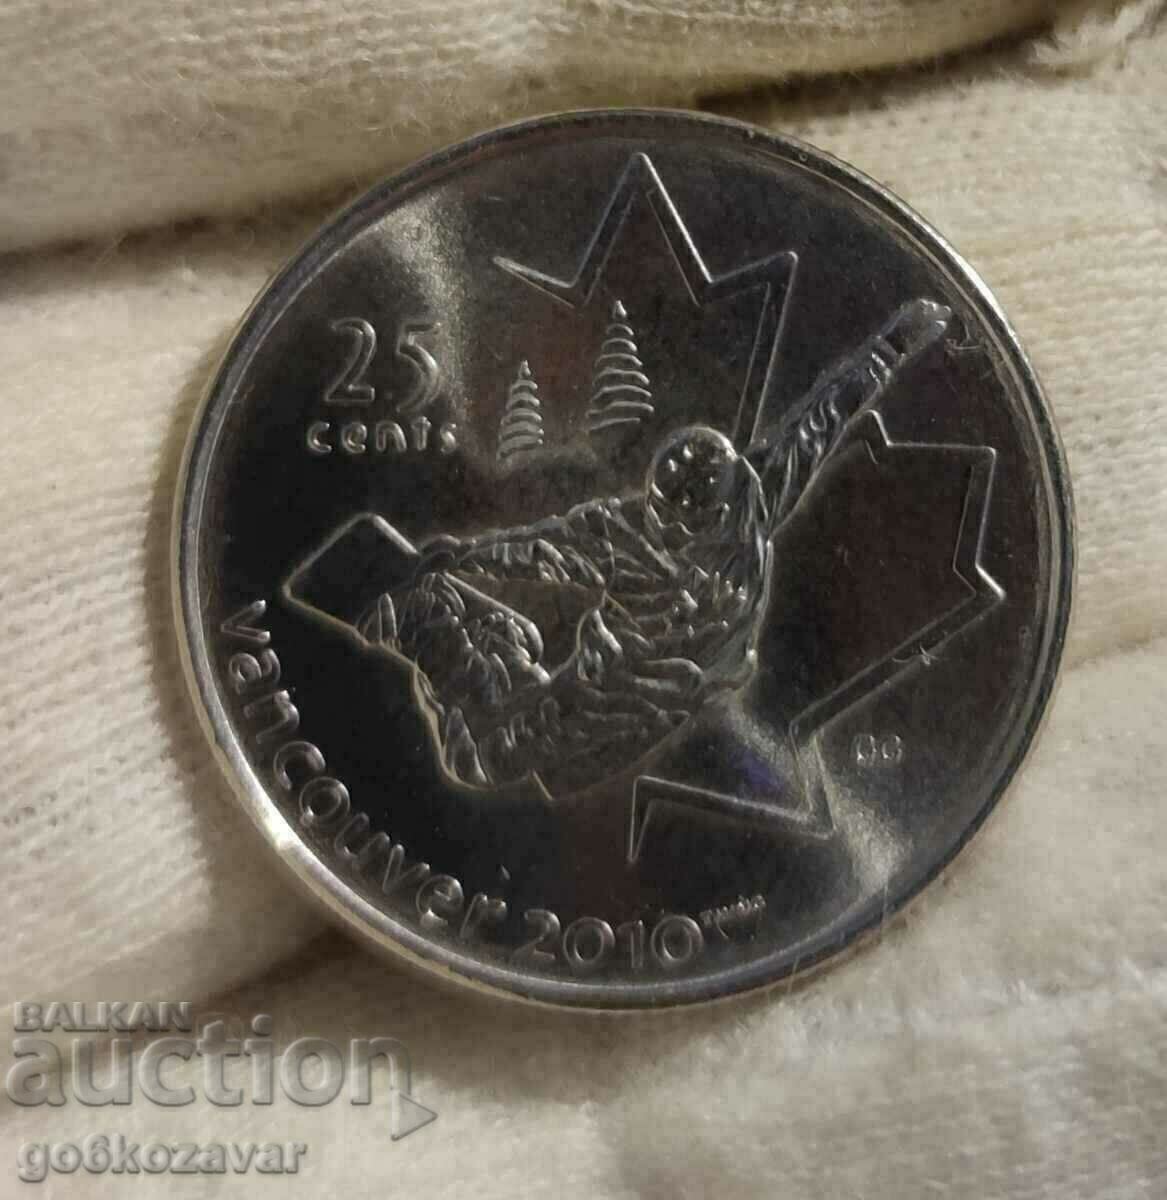 Canada 25 cents 2008 Winter Olympics!